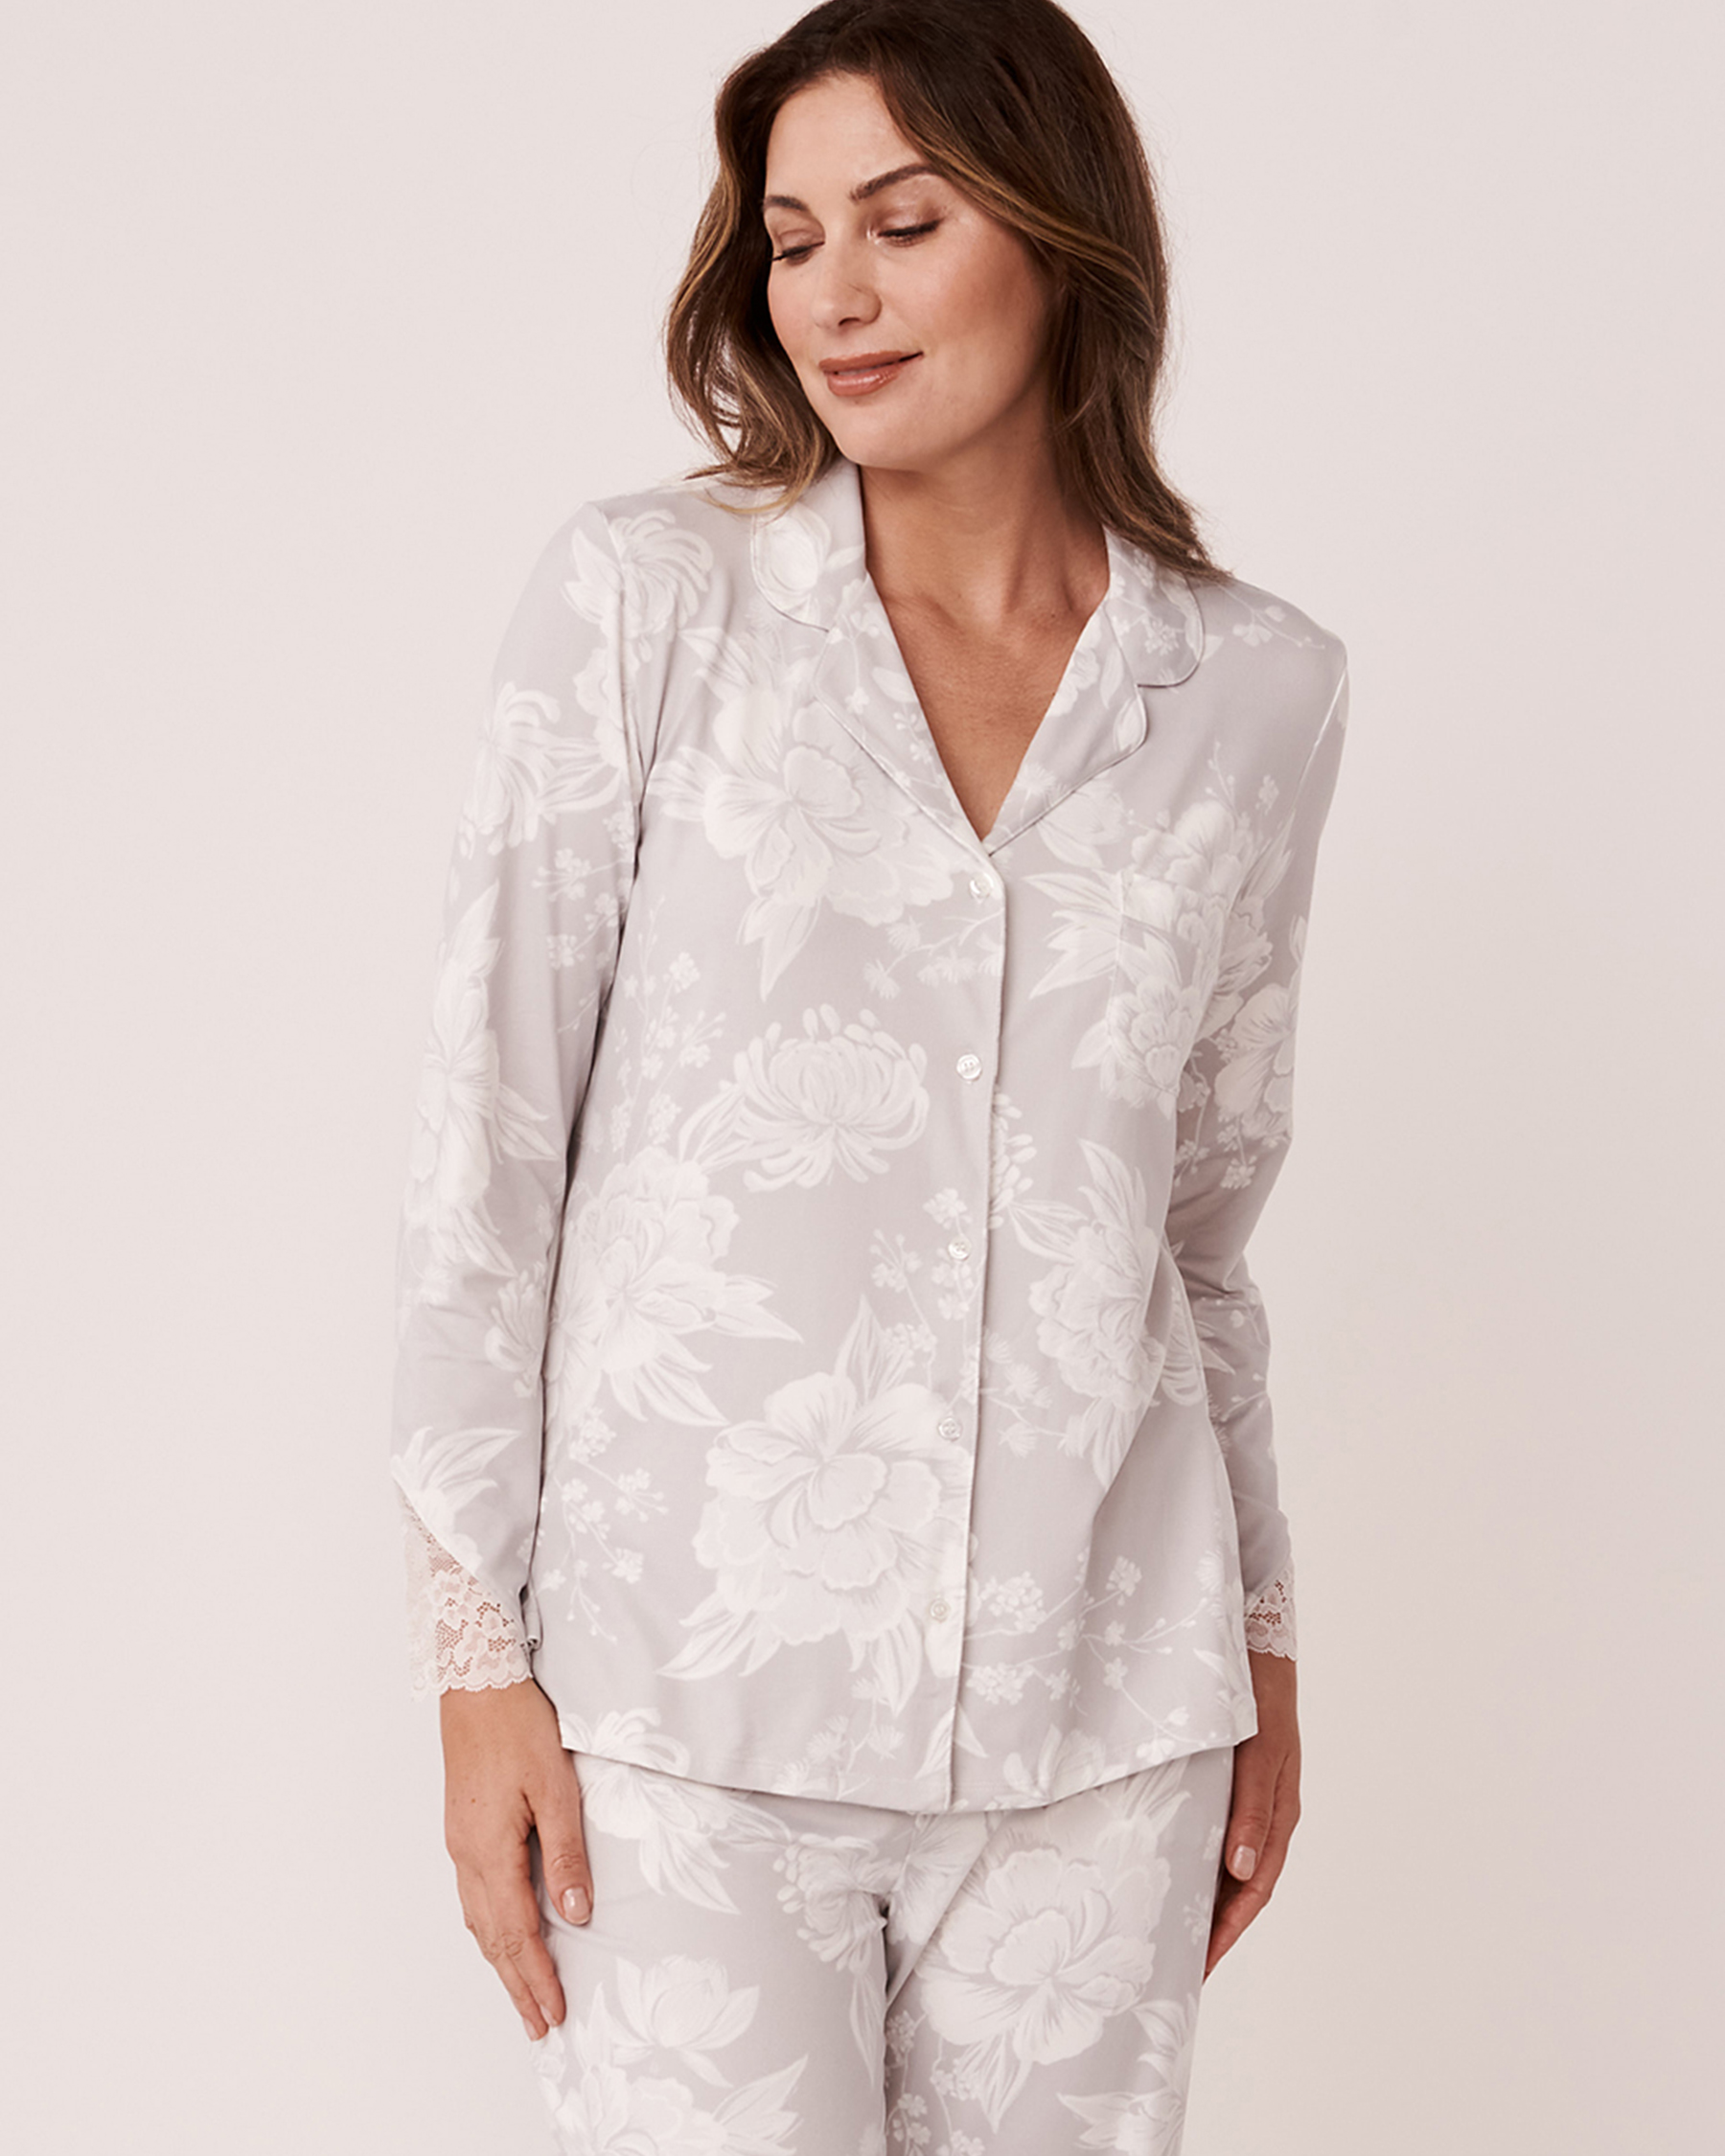 LA VIE EN ROSE Super Soft Lace Detail Button-down Shirt Romantic grey floral 40100366 - View1